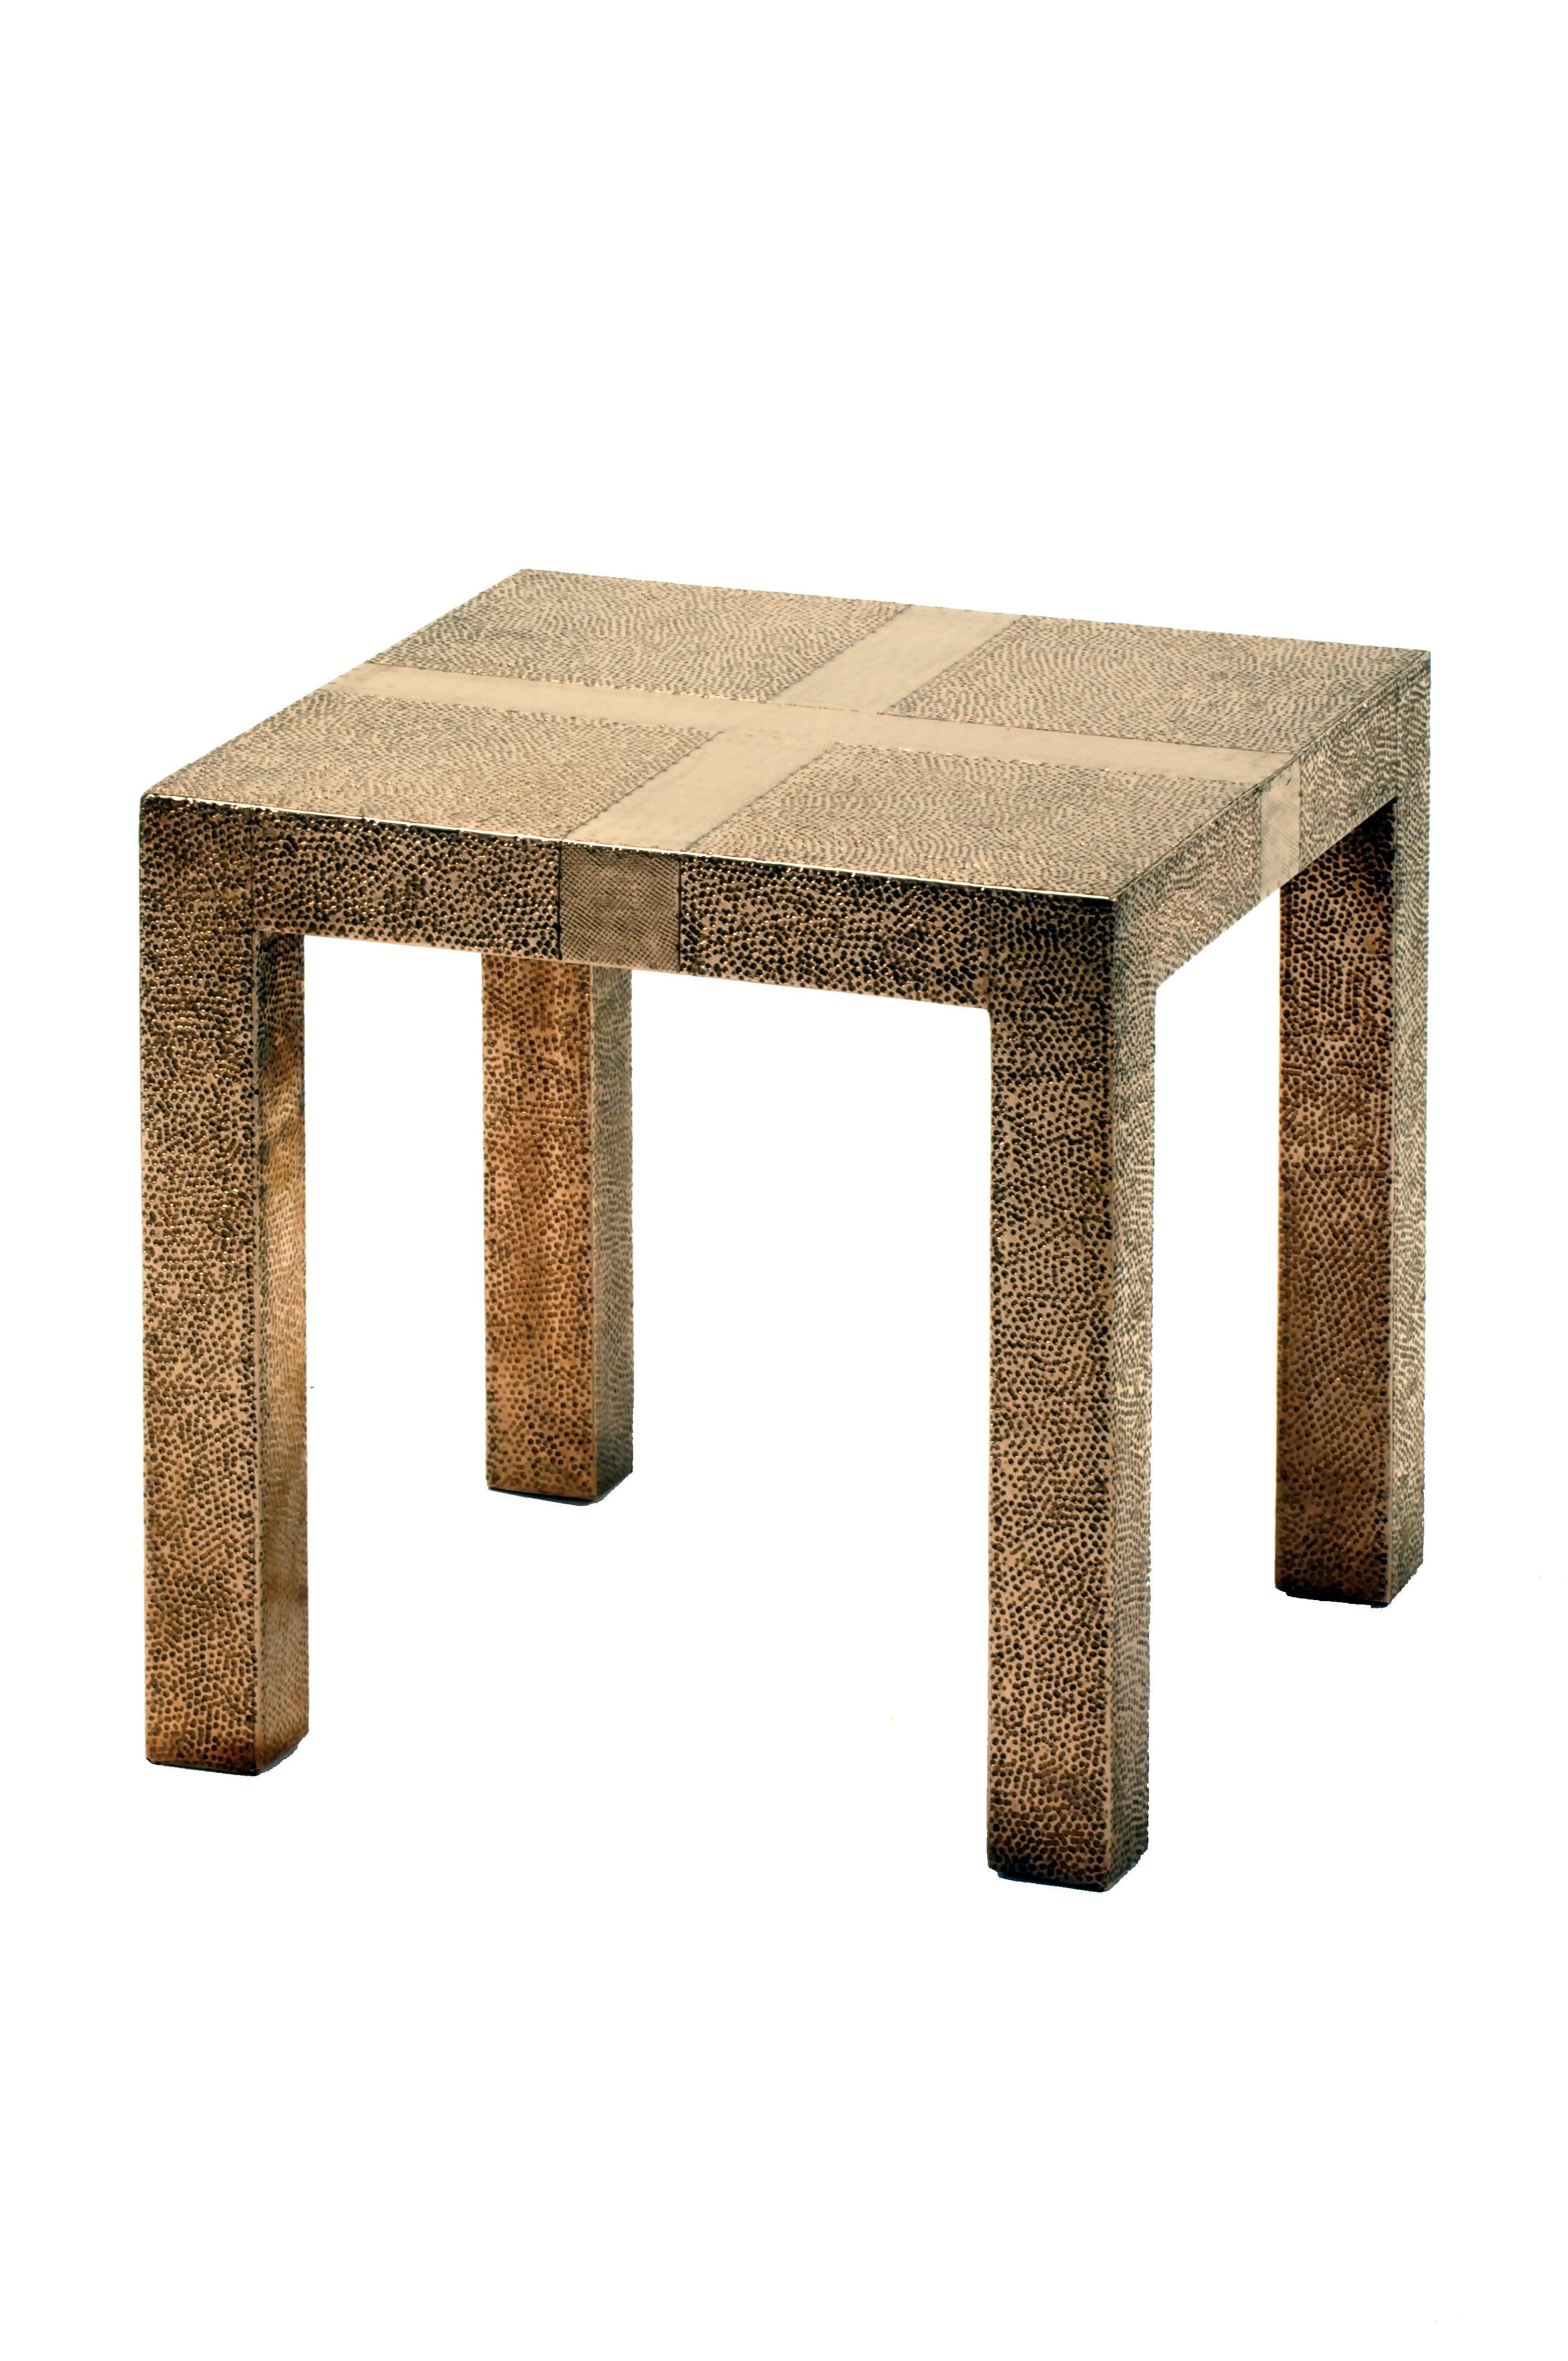 Alison Spear a conçu cette table élégante et minimale pour Stephanie Eleggard lors de leur voyage commun au Rajasthan, en Inde. Les artisans créent des motifs à l'aide de différents types de martelage dans les feuilles de métal recouvertes d'une